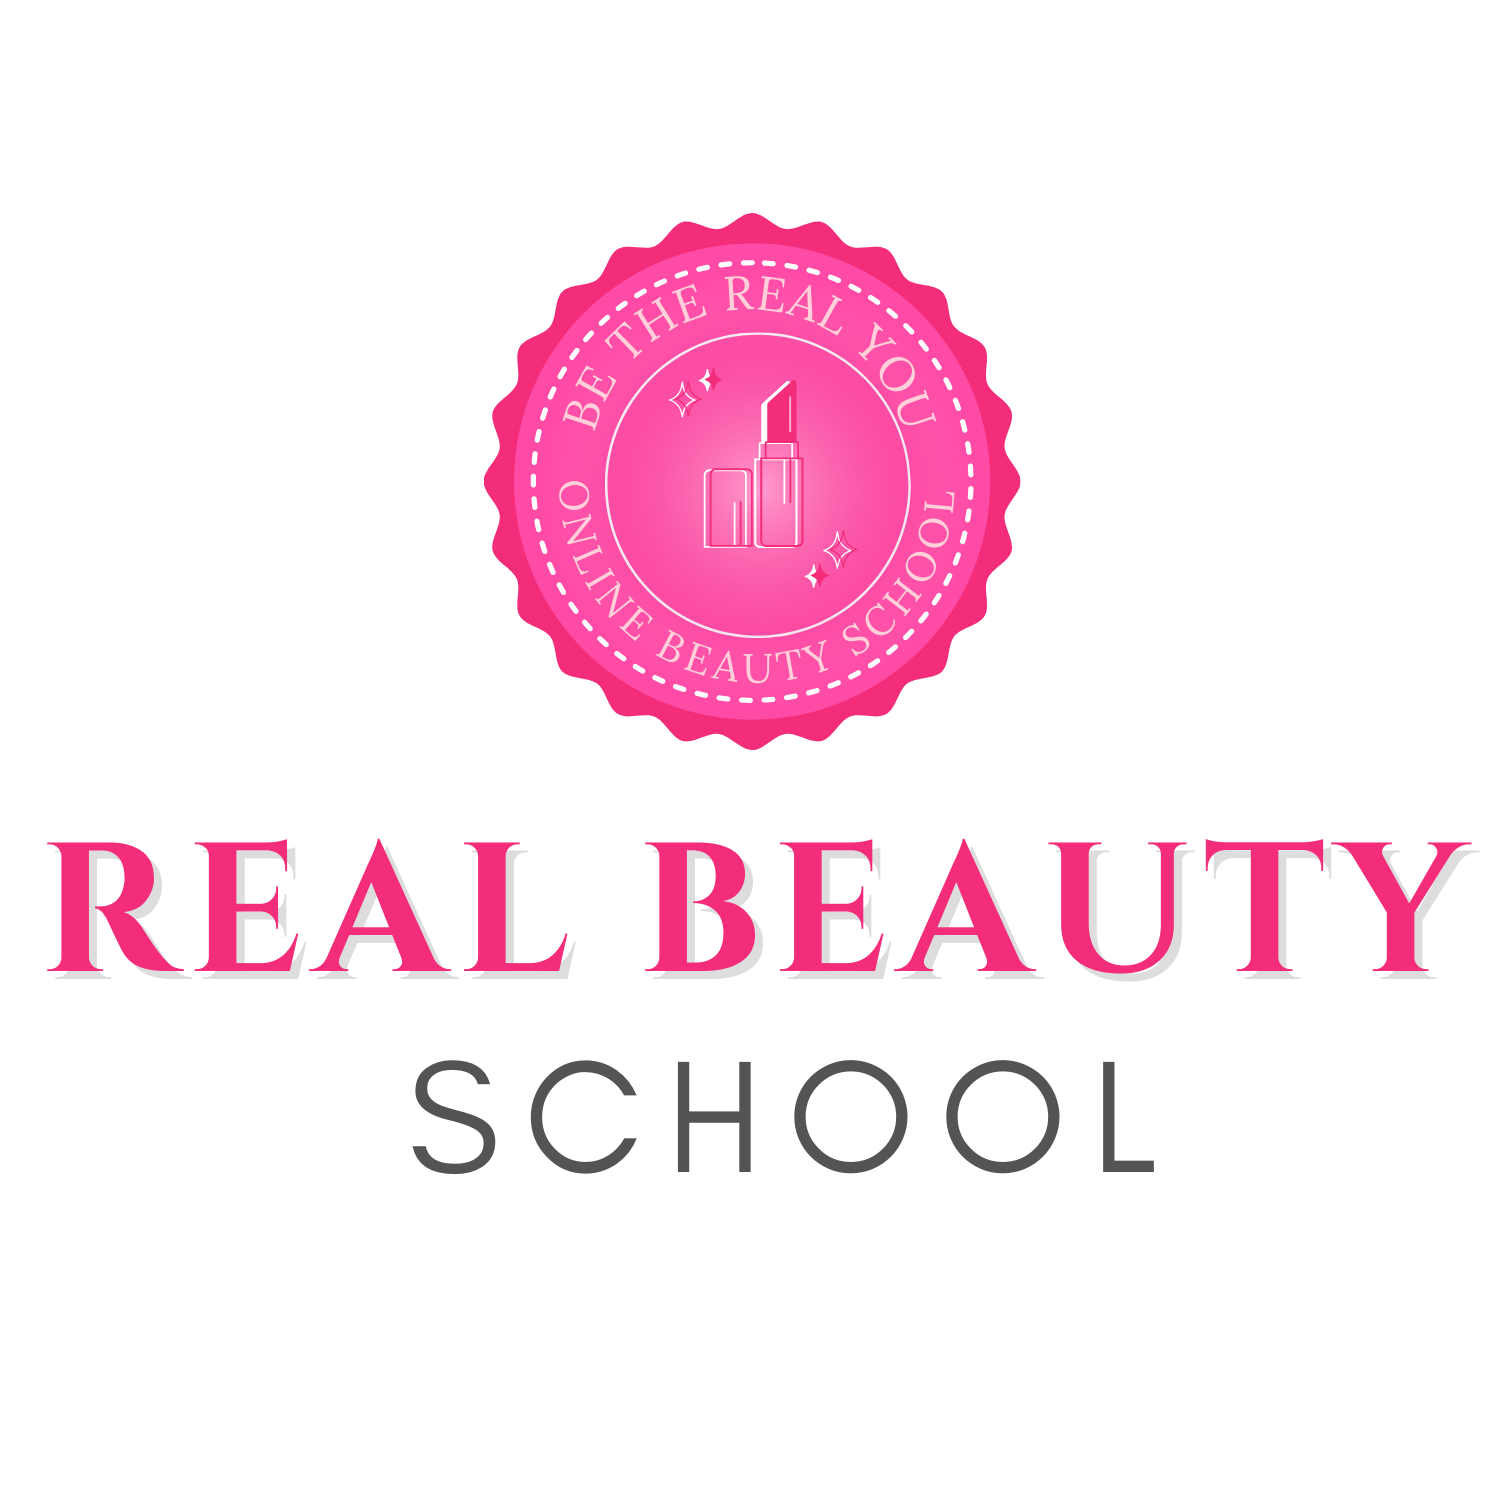 Real beauty school